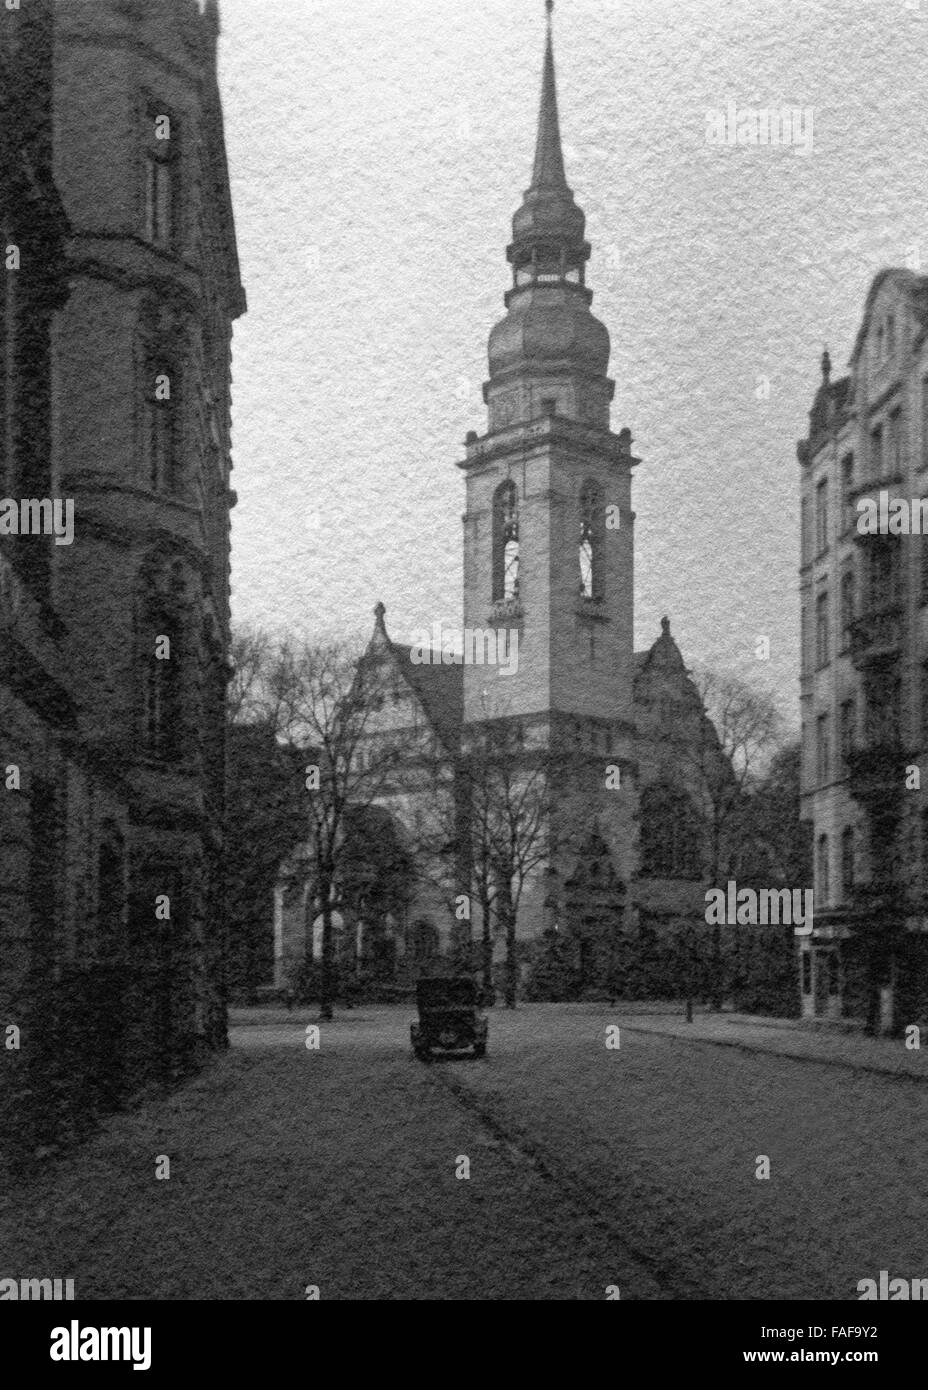 Lutherkirche die in der Südstadt von Köln, Deutschland 1920er Jahre. L'église de Luther dans la partie sud de la ville de Cologne, Allemagne 1920. Banque D'Images